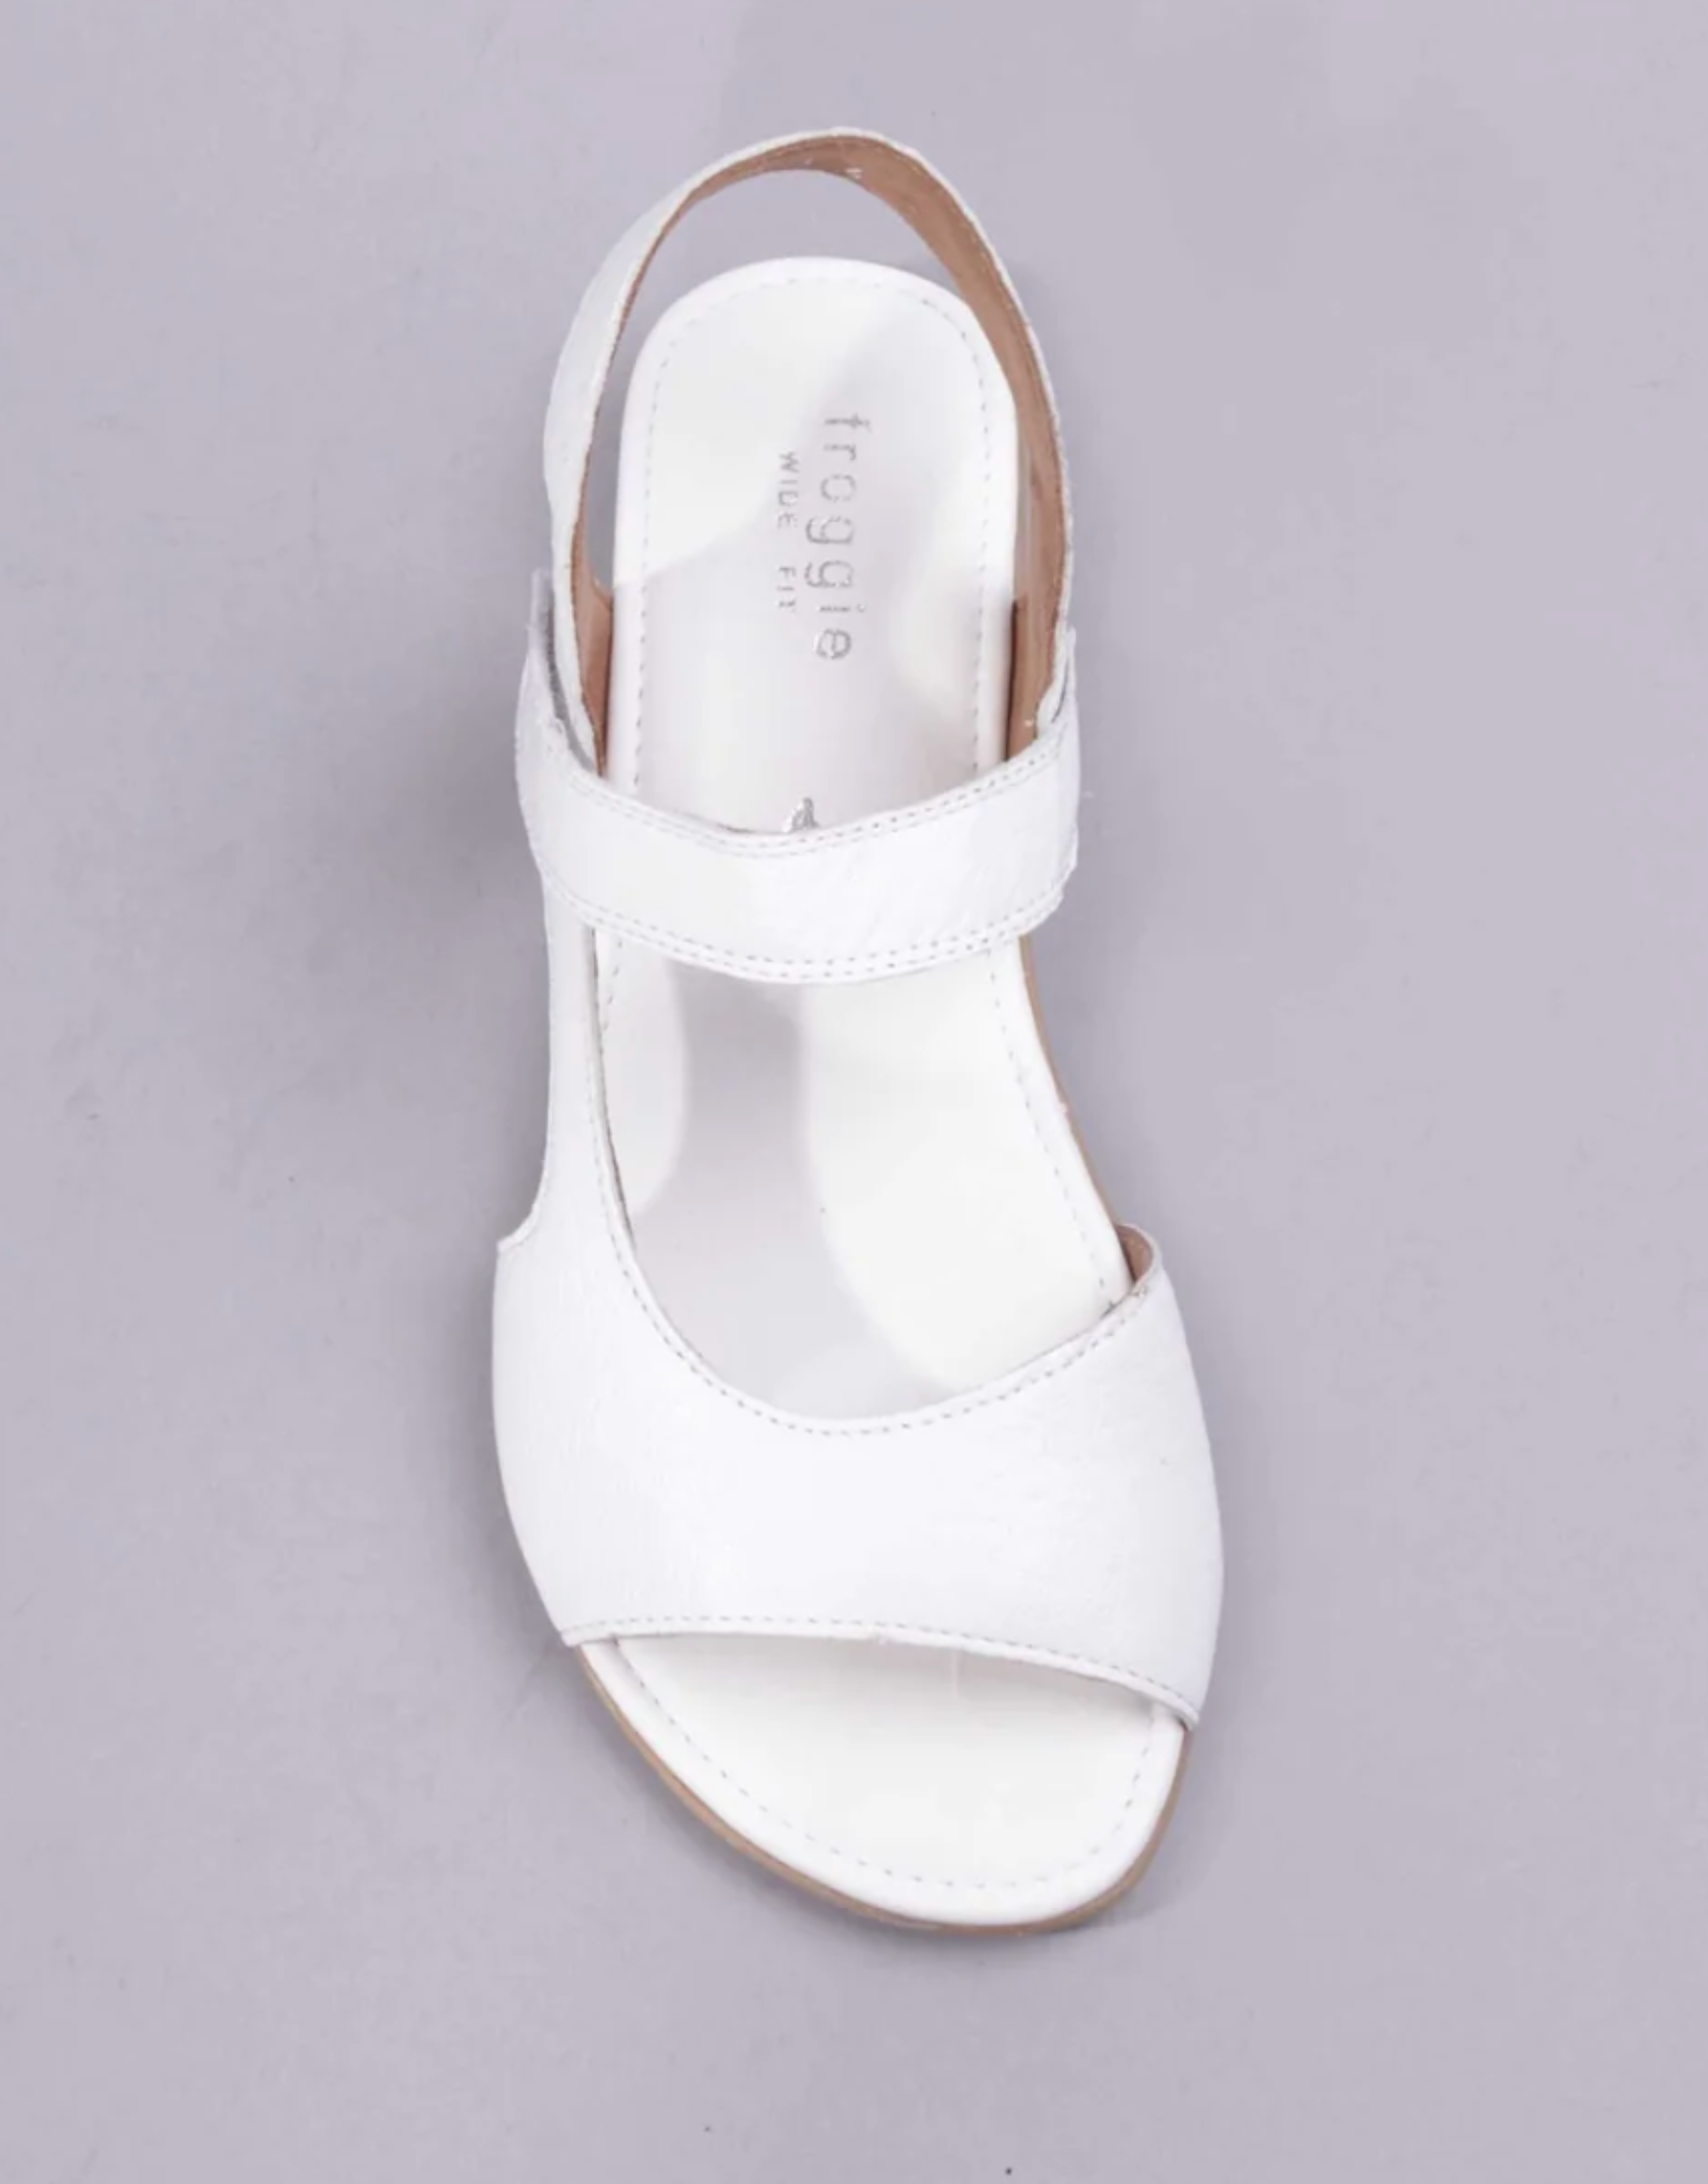 FROGGIE WHITE SLINGBACK SANDAL | Rosella - Style inspired by elegance